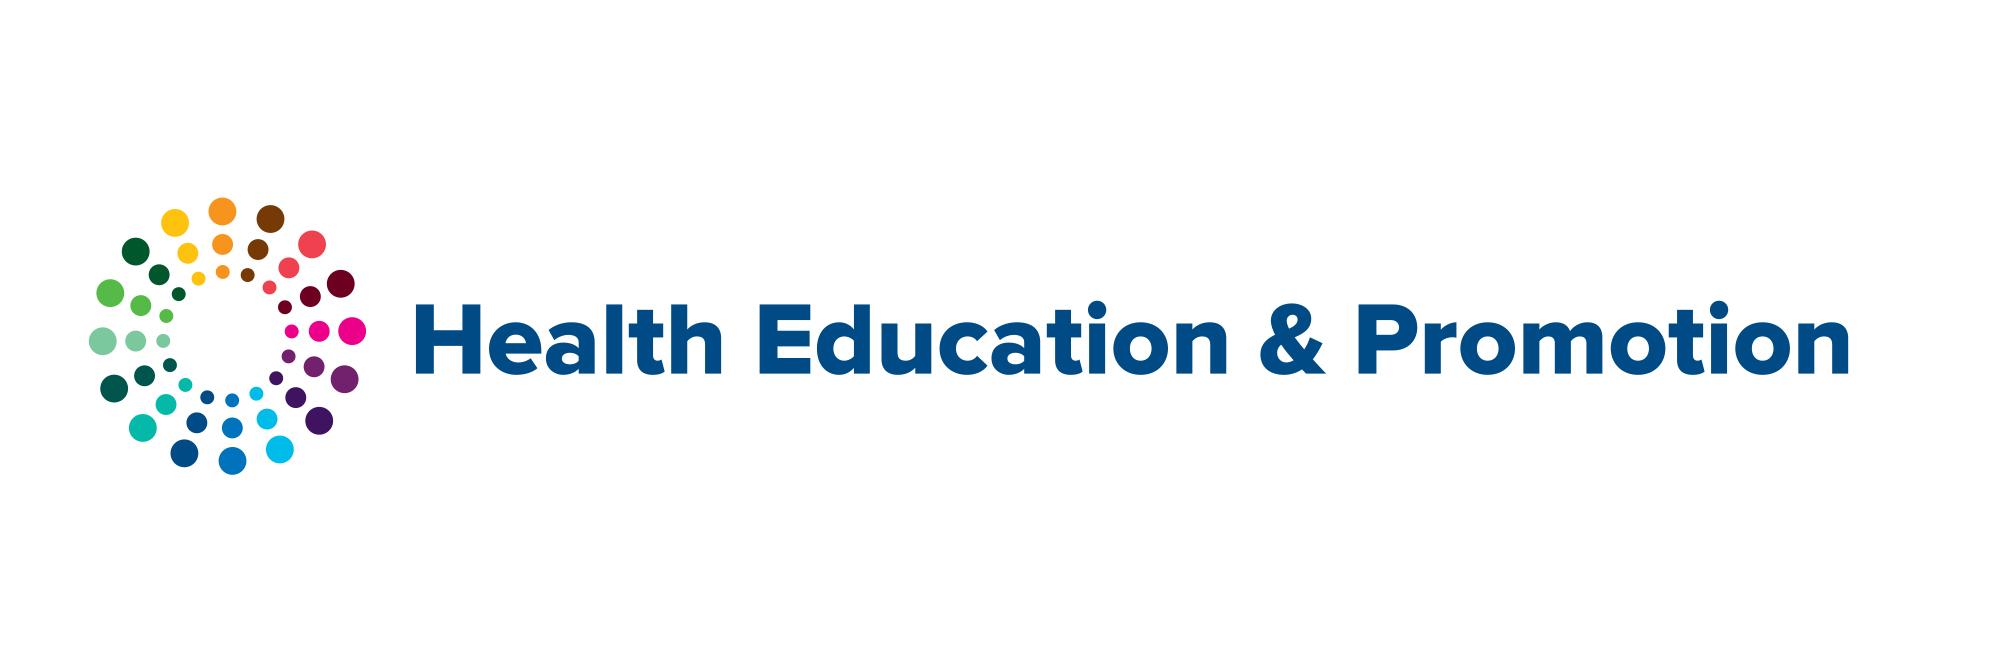 同心圆彩虹圆点图案(HEP标志)，旁边用深蓝色书写健康教育与促进